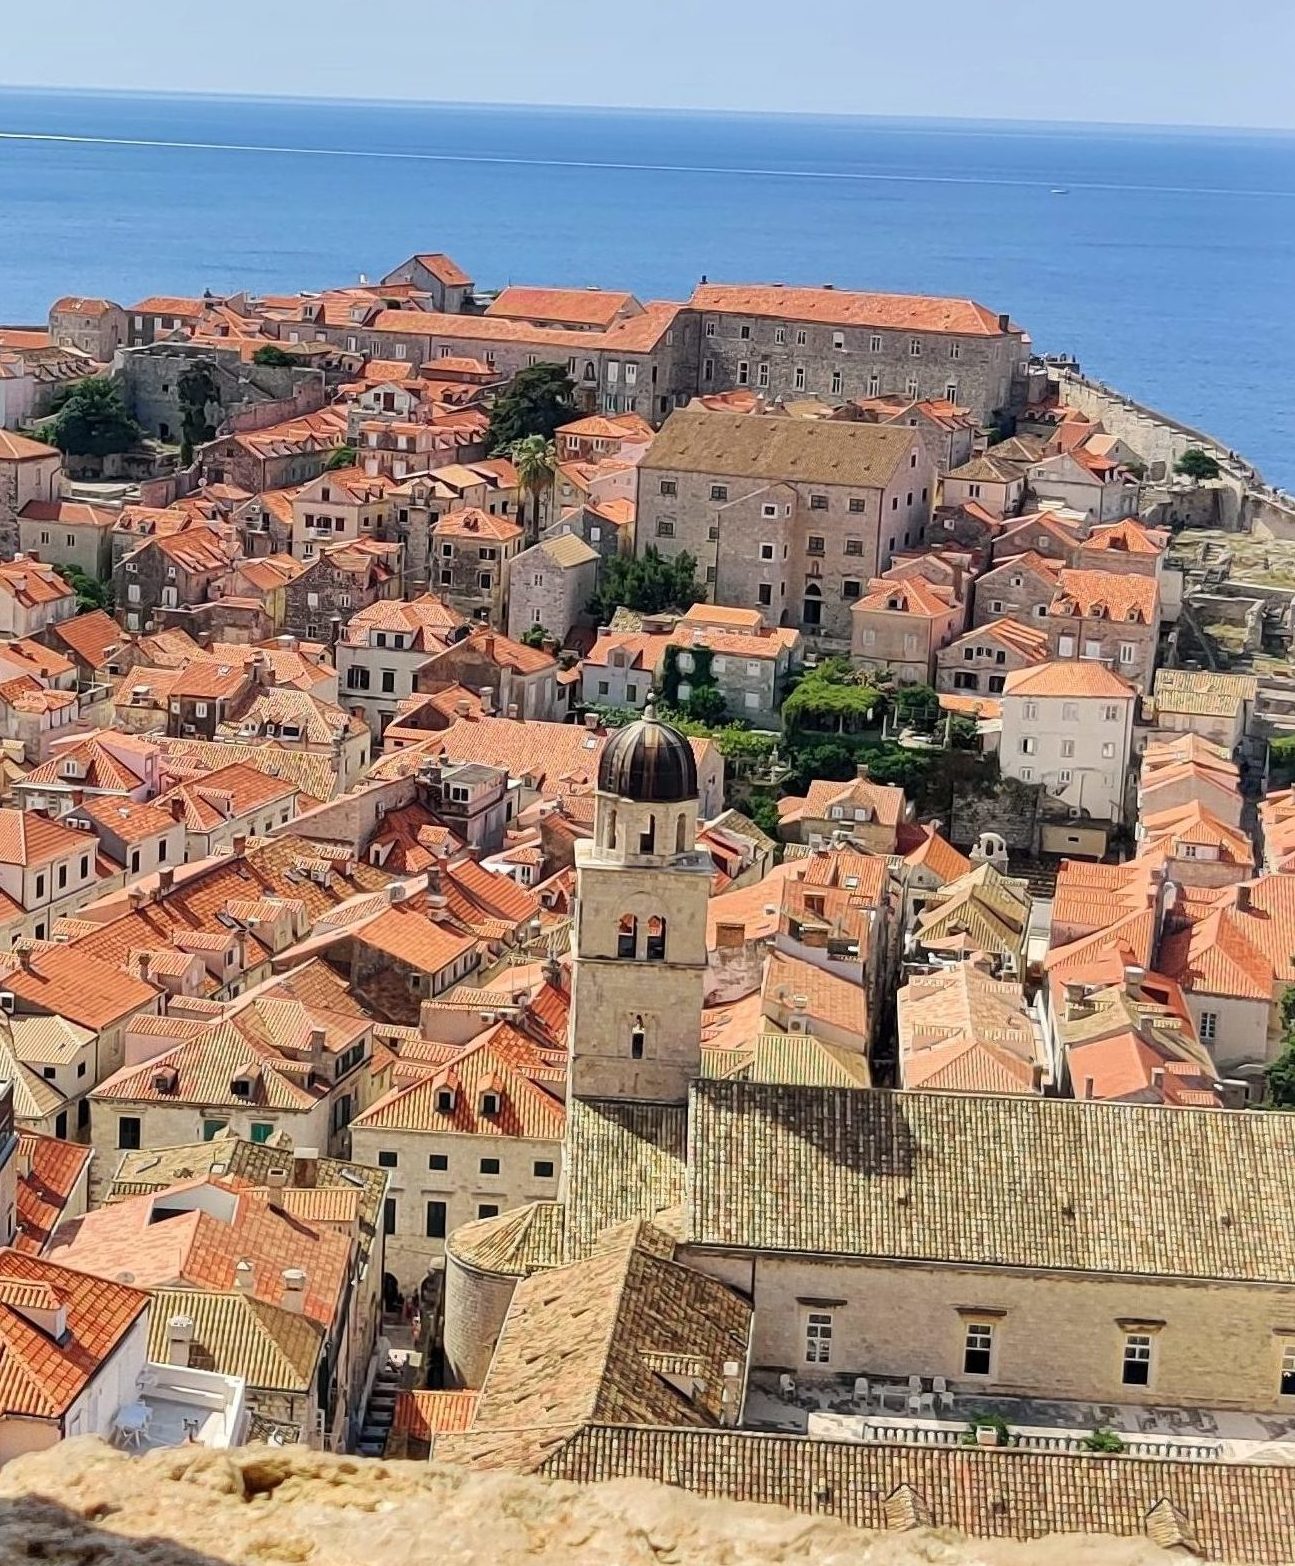 Visiter la ville de Dubrovnik lors d'un roadtrip en Croatie